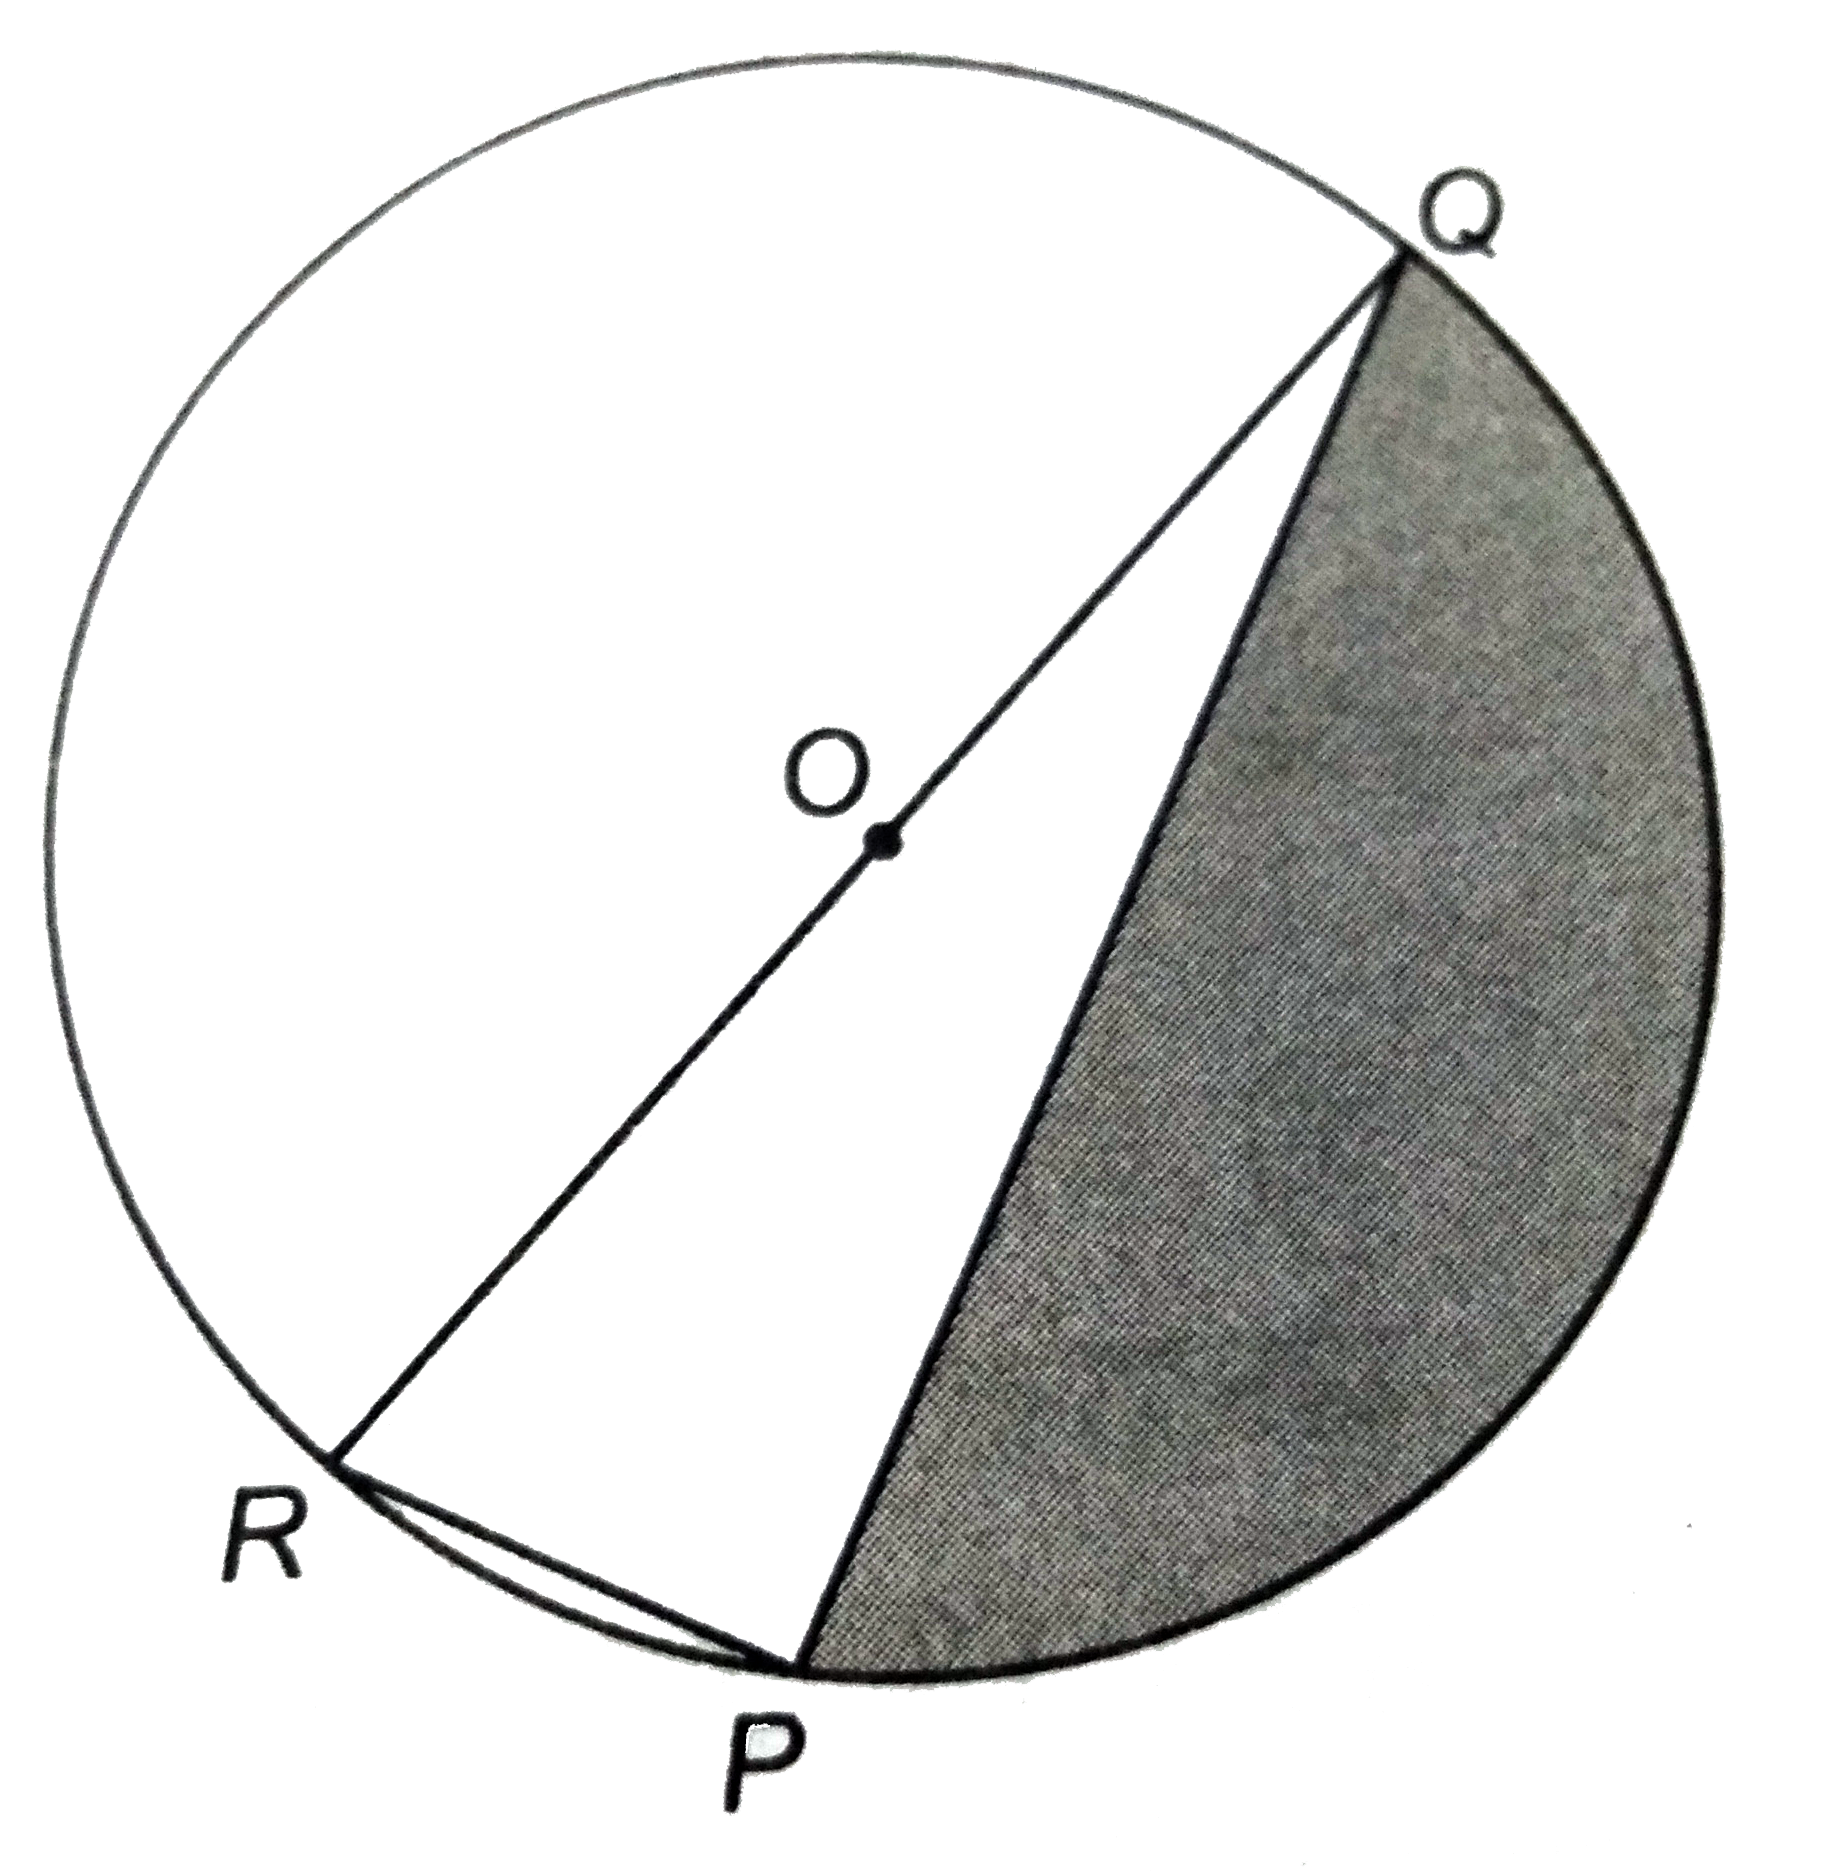 आकृति में , छायांकित  भाग  का क्षेत्रफल  ज्ञात  कीजिए , यदि PQ = 24 सेमी , PR = 7  सेमी तथा O वृत्त का केंद्र है ।